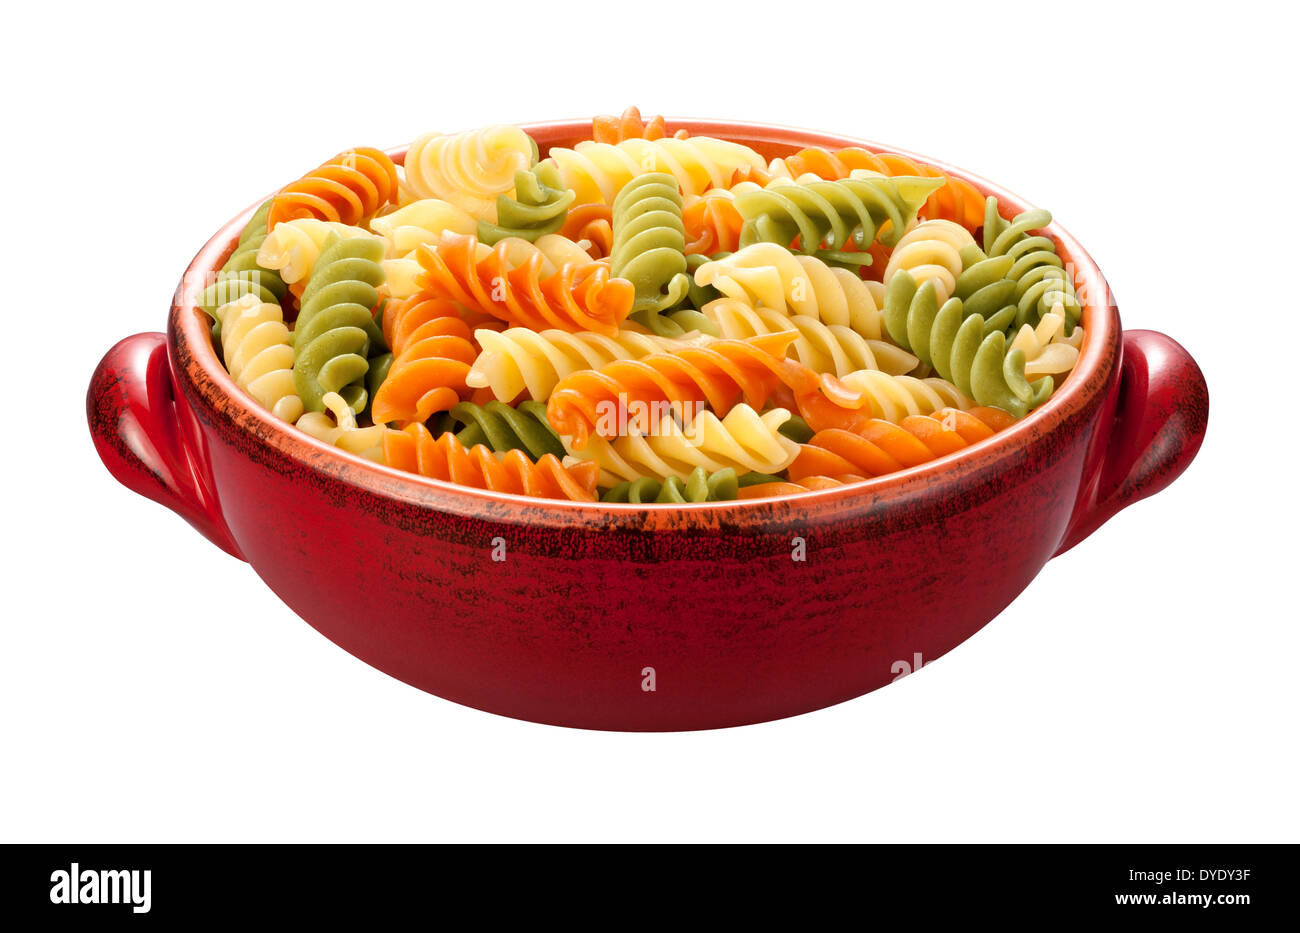 Rotini arcobaleno la pasta in un recipiente rosso, isolata su uno sfondo bianco. Foto Stock